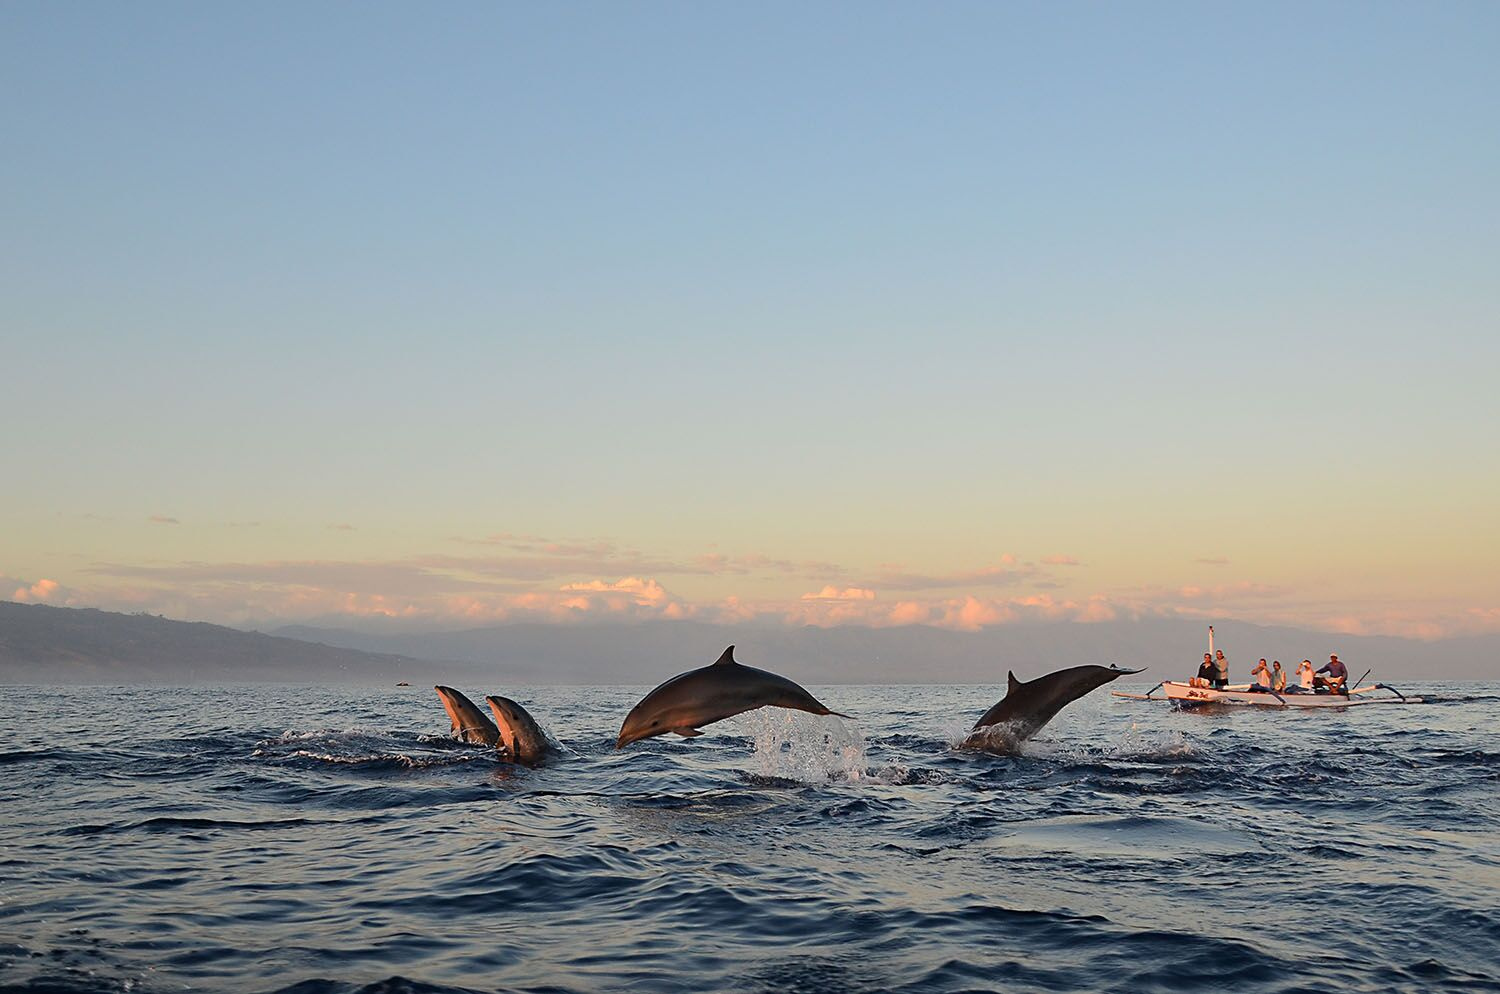 Море, дельфины и лодка с туристами